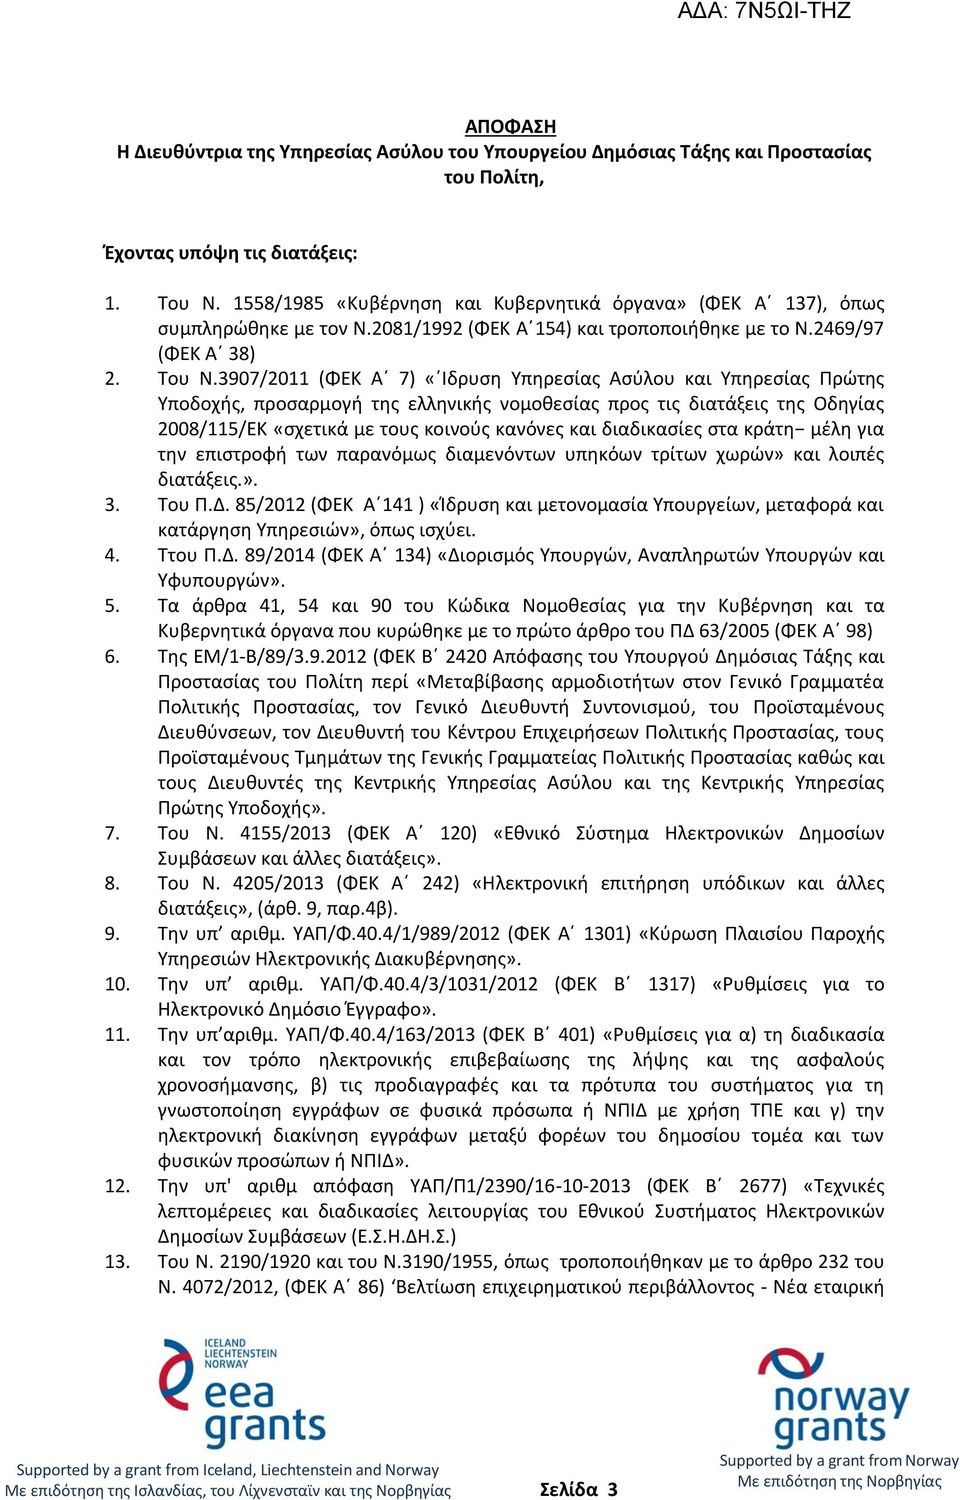 3907/2011 (ΦΕΚ Α 7) «Ιδρυση Υπηρεσίας Ασύλου και Υπηρεσίας Πρώτης Υποδοχής, προσαρμογή της ελληνικής νομοθεσίας προς τις διατάξεις της Οδηγίας 2008/115/ΕΚ «σχετικά με τους κοινούς κανόνες και